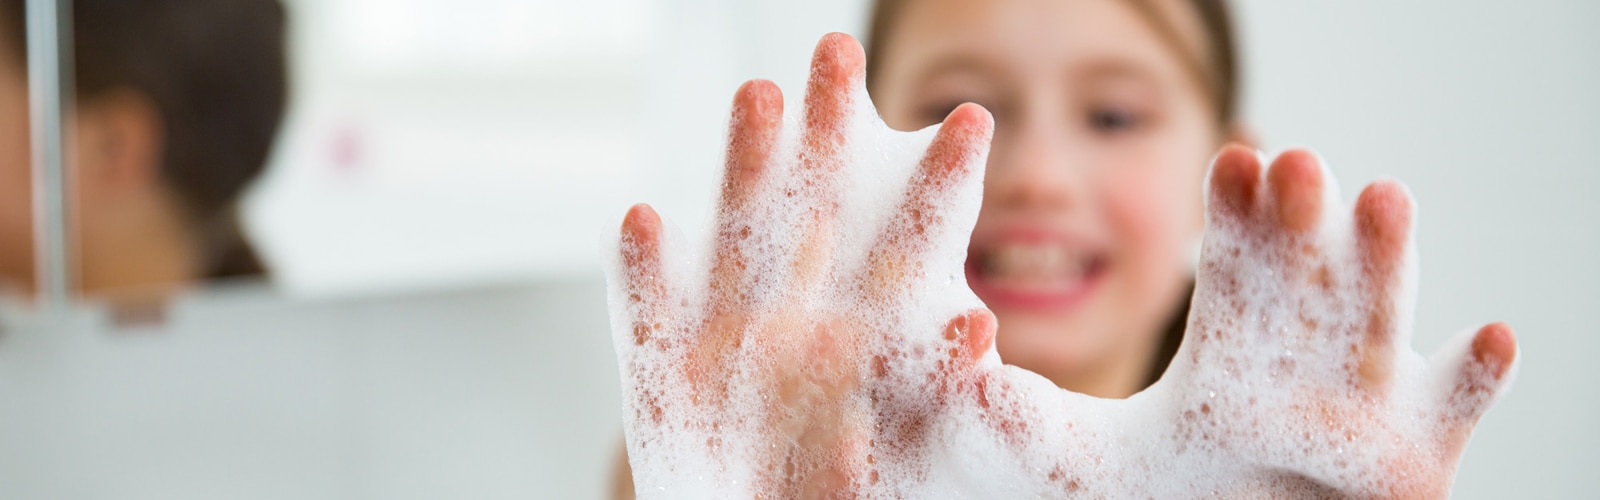 Mains d’une jeune fille couvertes de mousse de savon